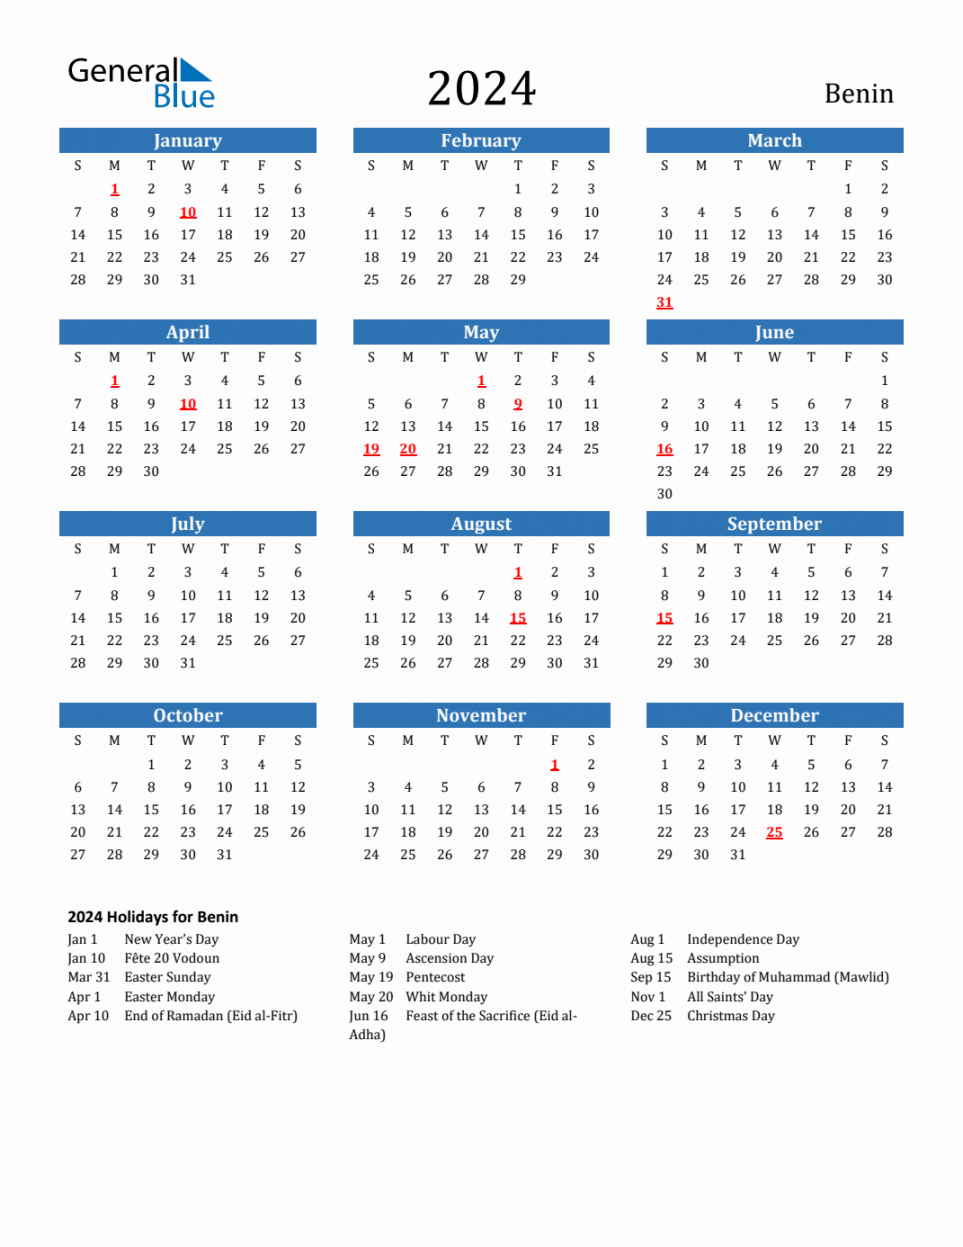 Benin Calendar with Holidays